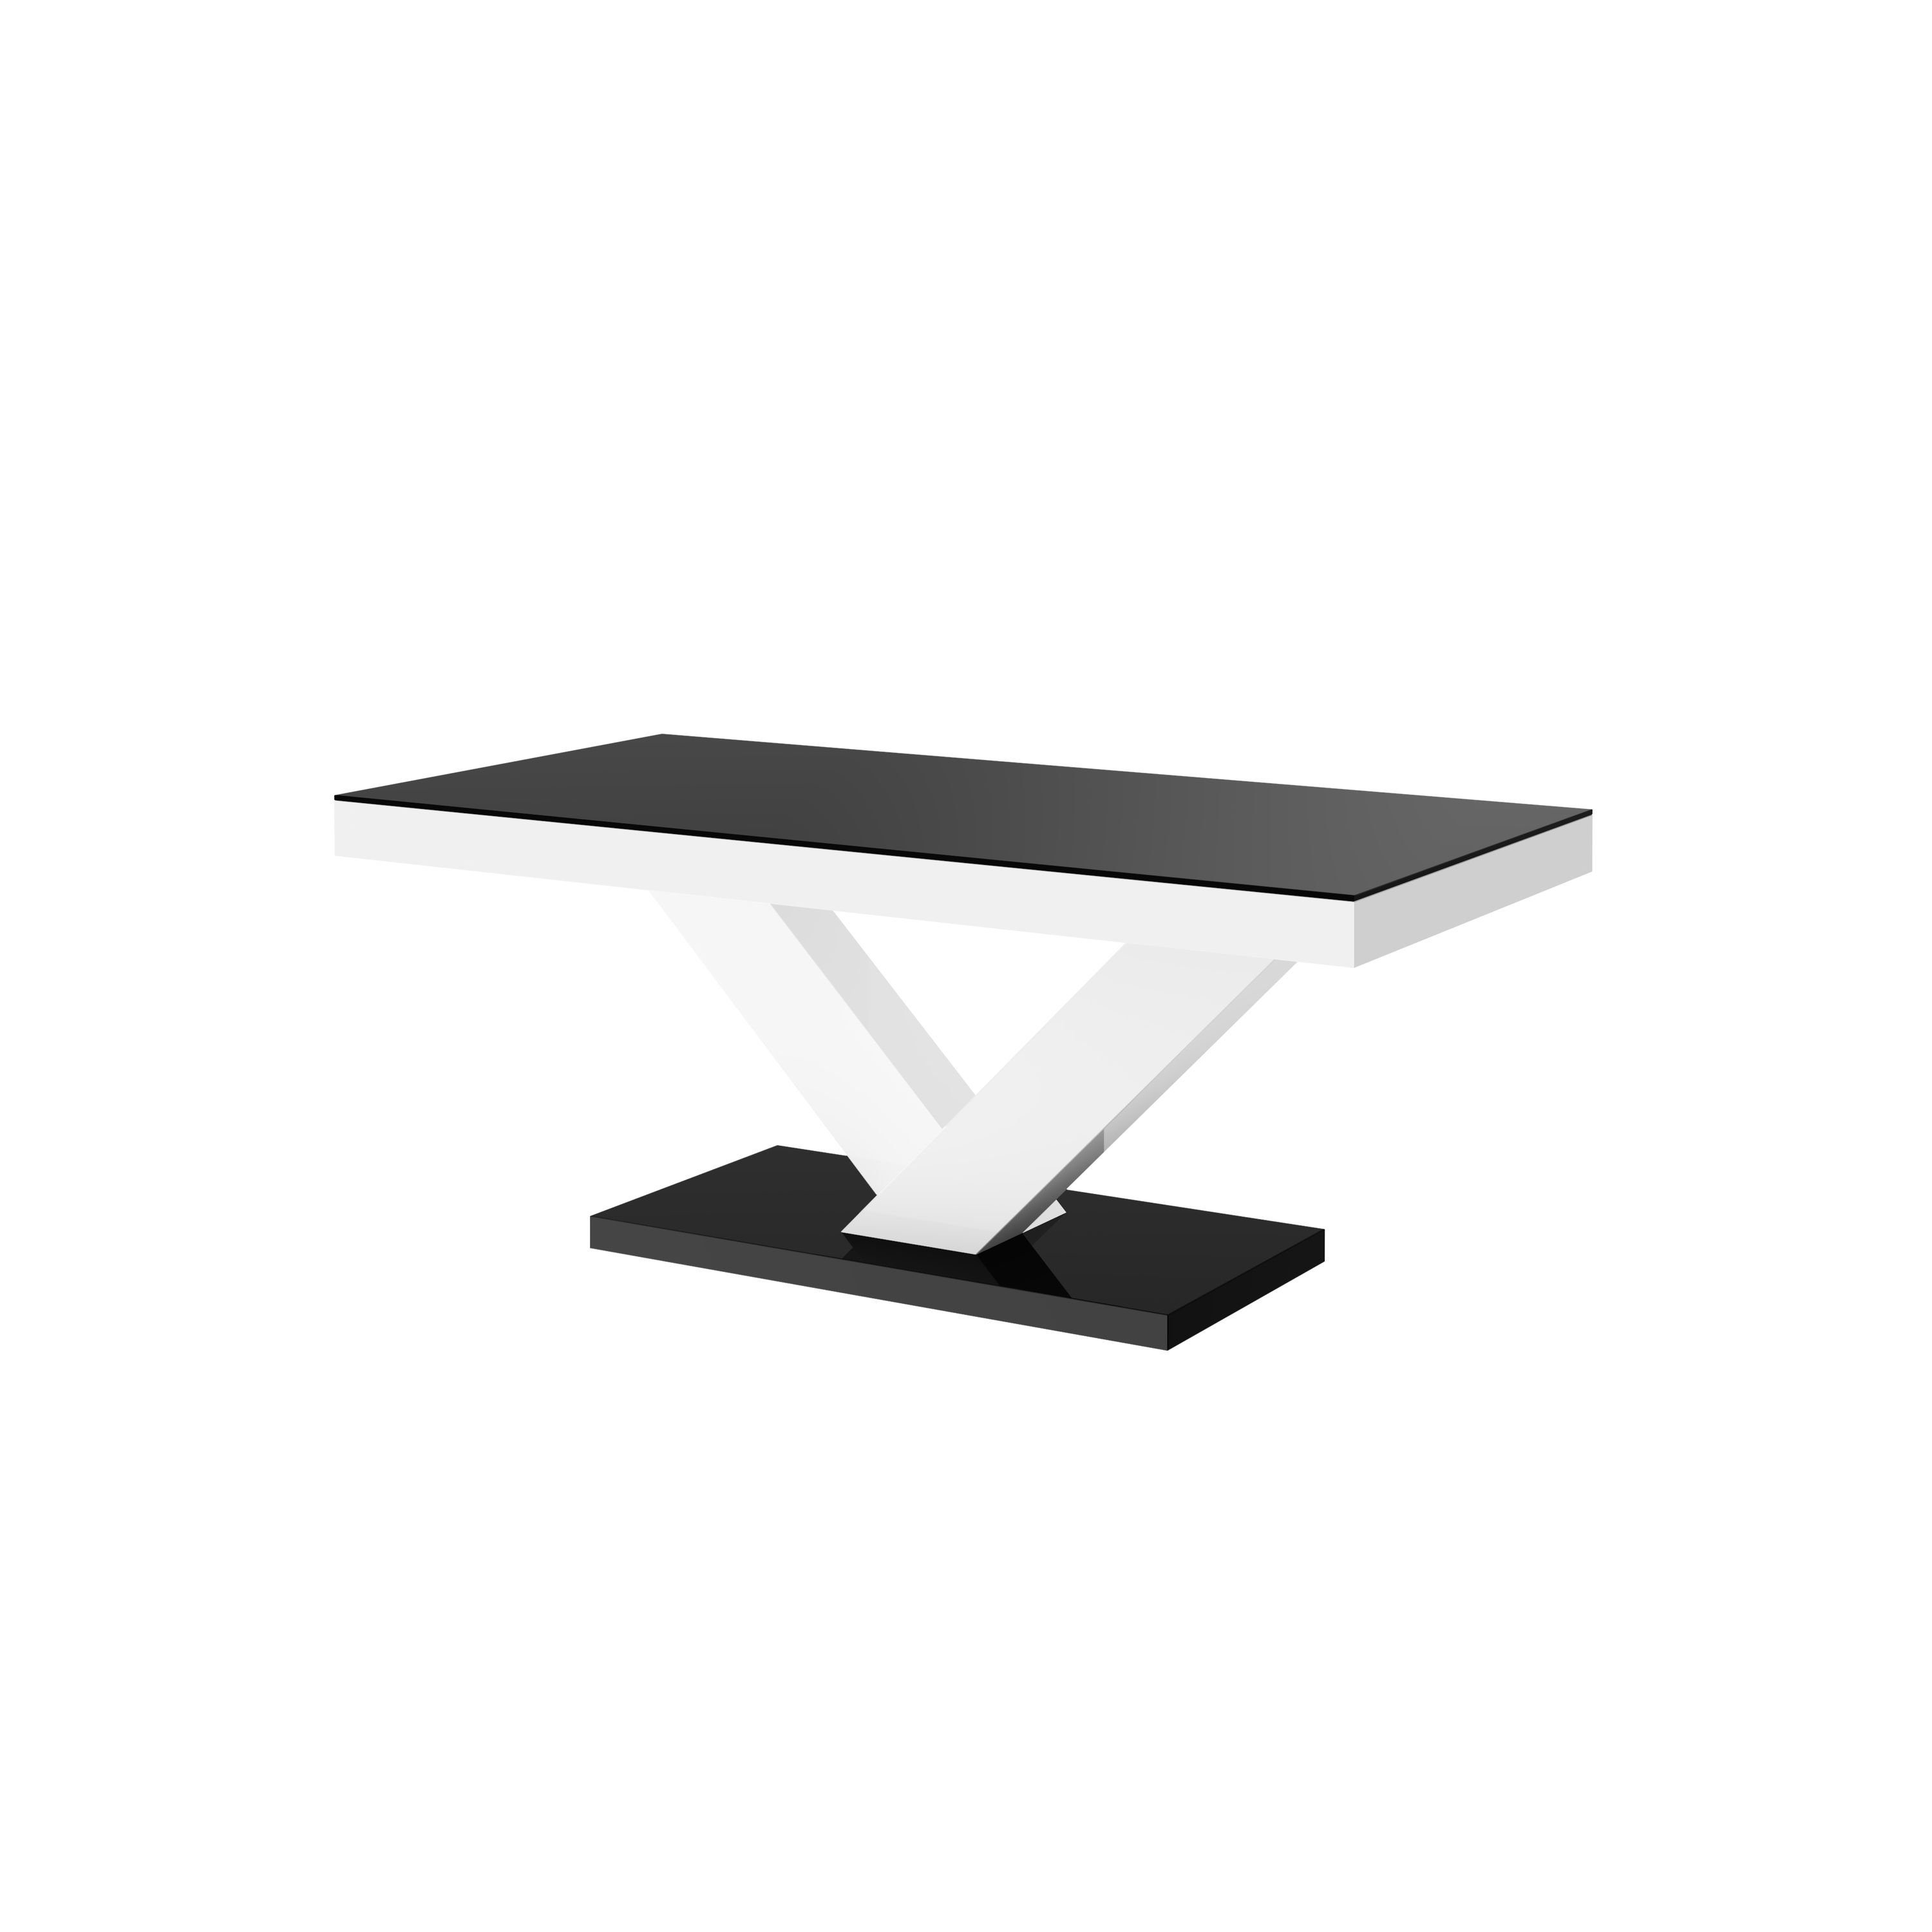 Hochglanz Highgloss / Weiß Couchtisch HV-888 Hochglanz Schwarz Tisch Weiß Design / Wohnzimmertisch designimpex Schwarz Hochglanz